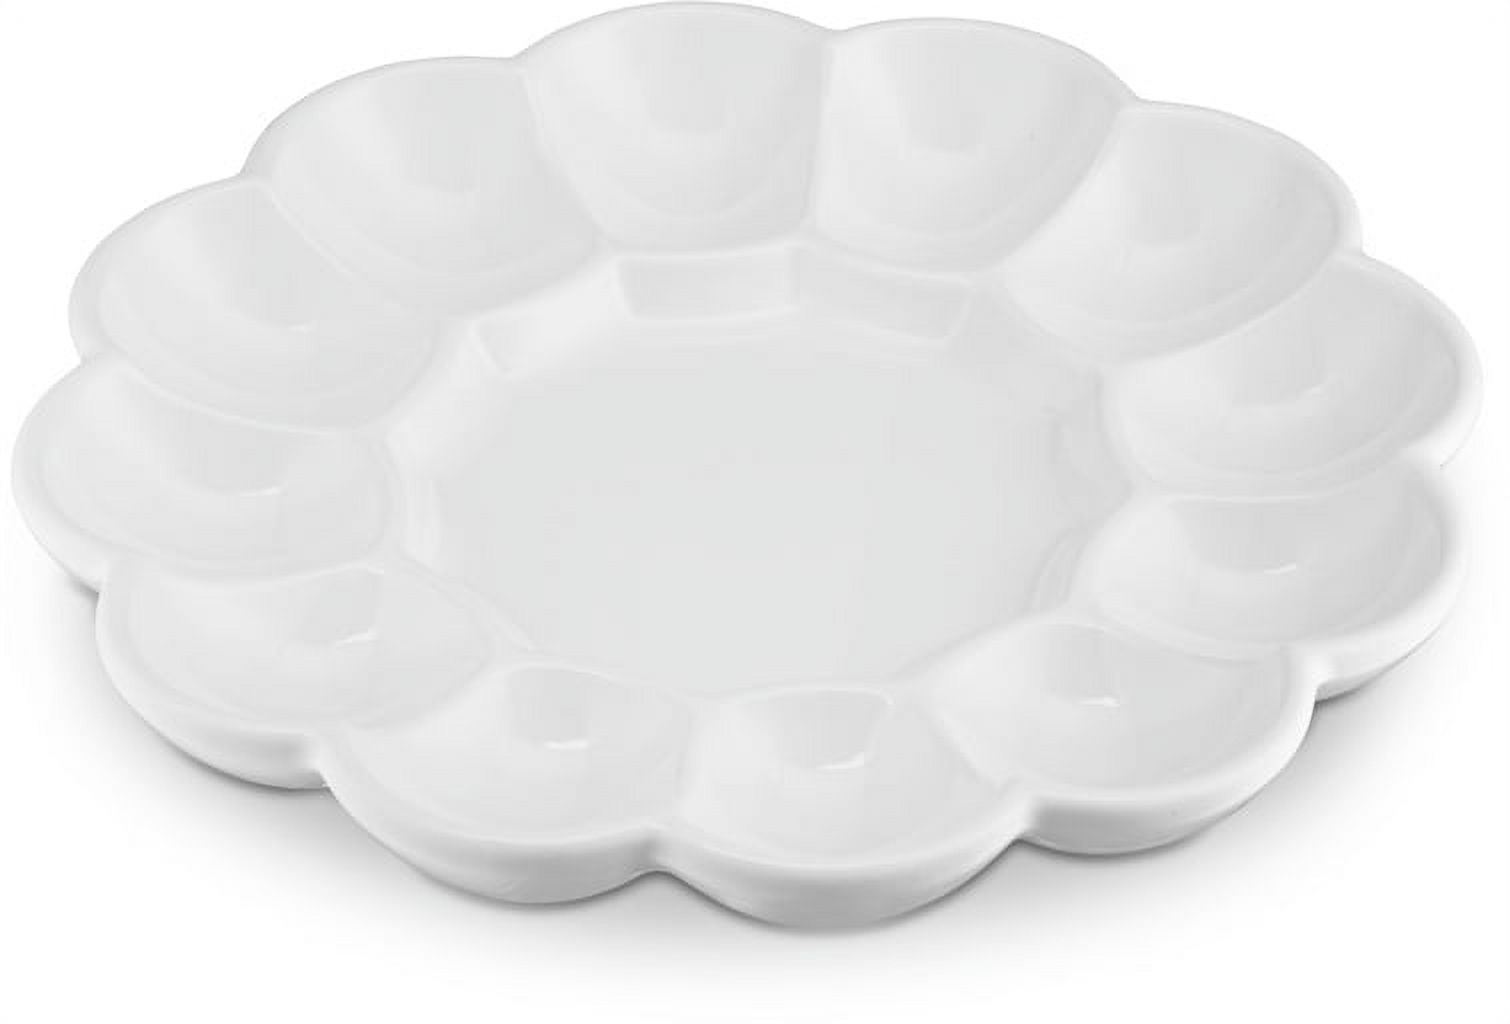 Kook Deviled Egg Tray, White Ceramic, Holds 12 Eggs - image 3 of 5